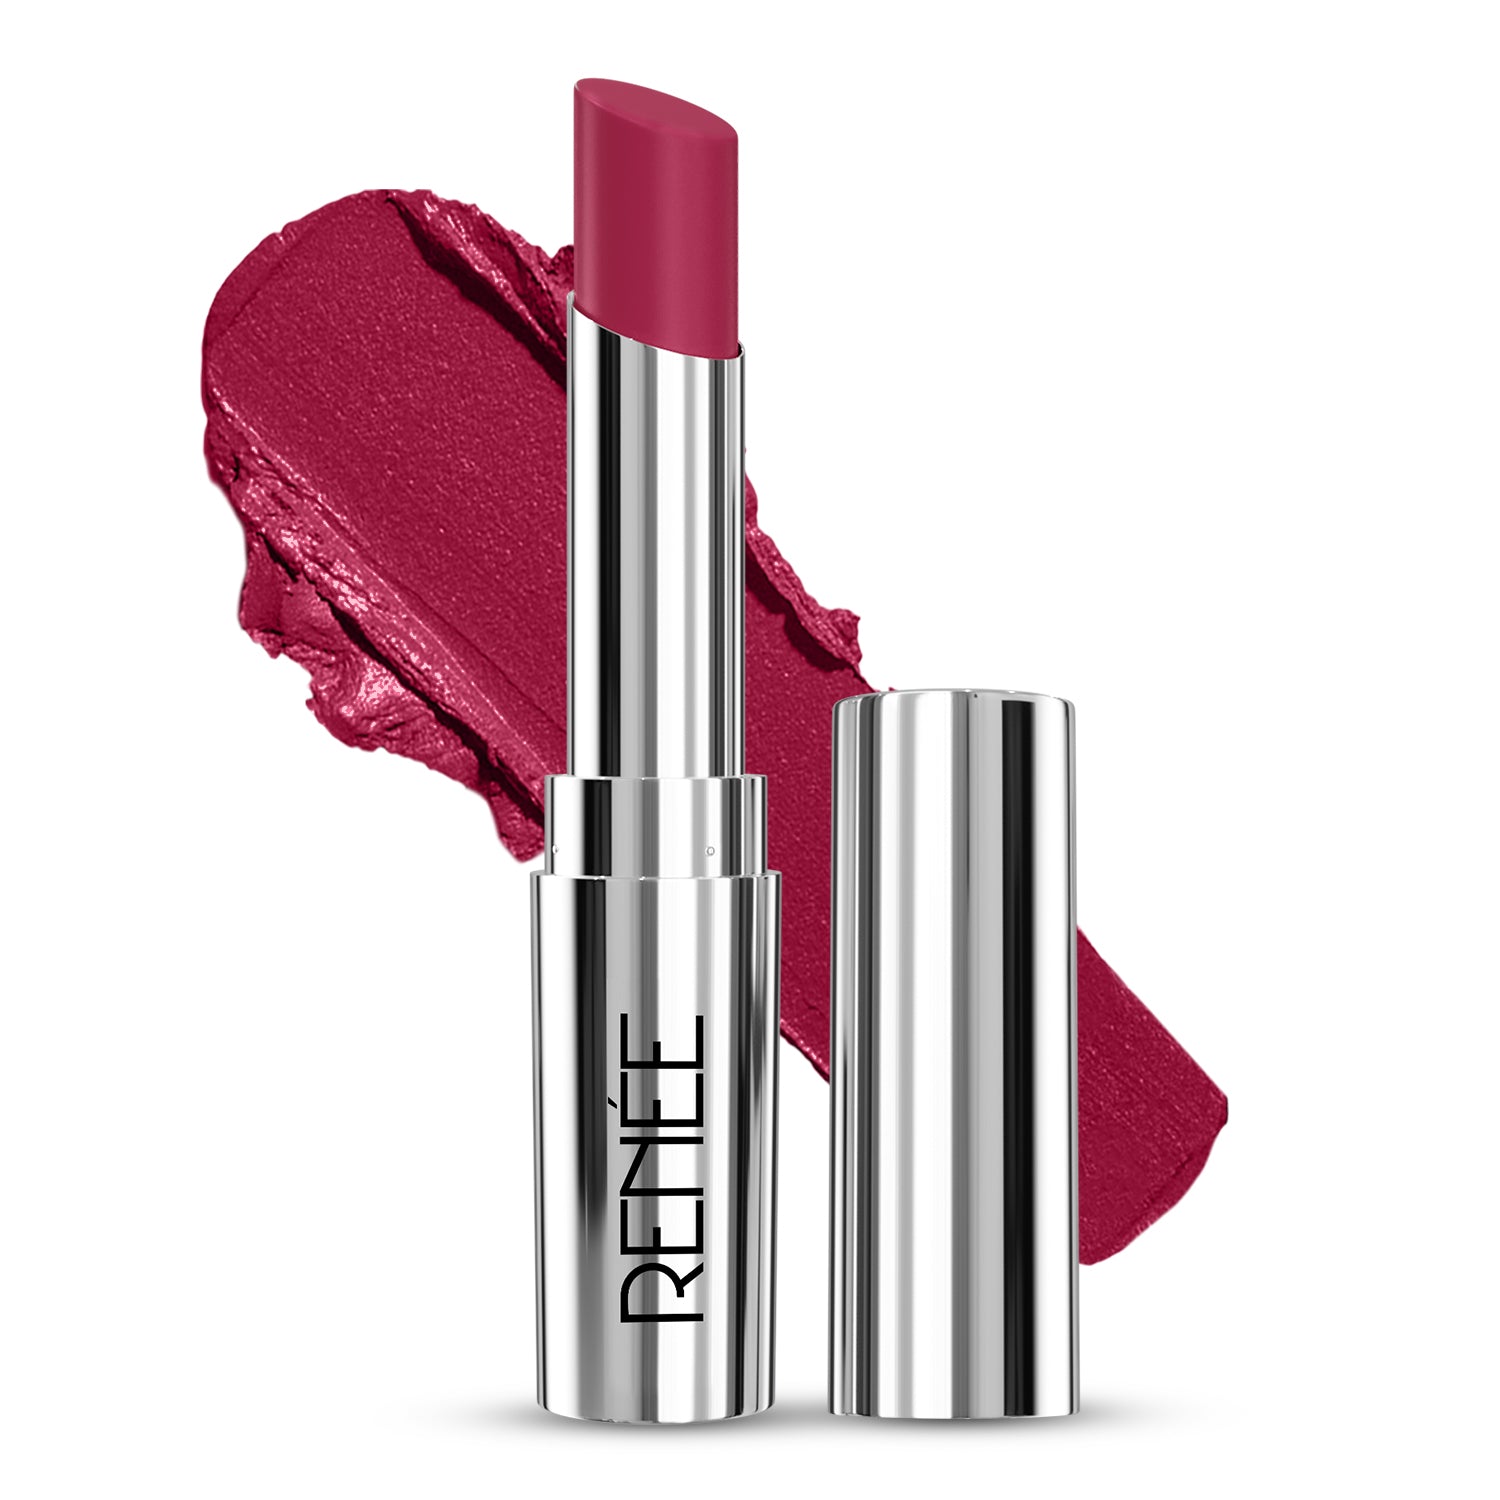 RENEE Crush Glossy Lipstick, 4gm